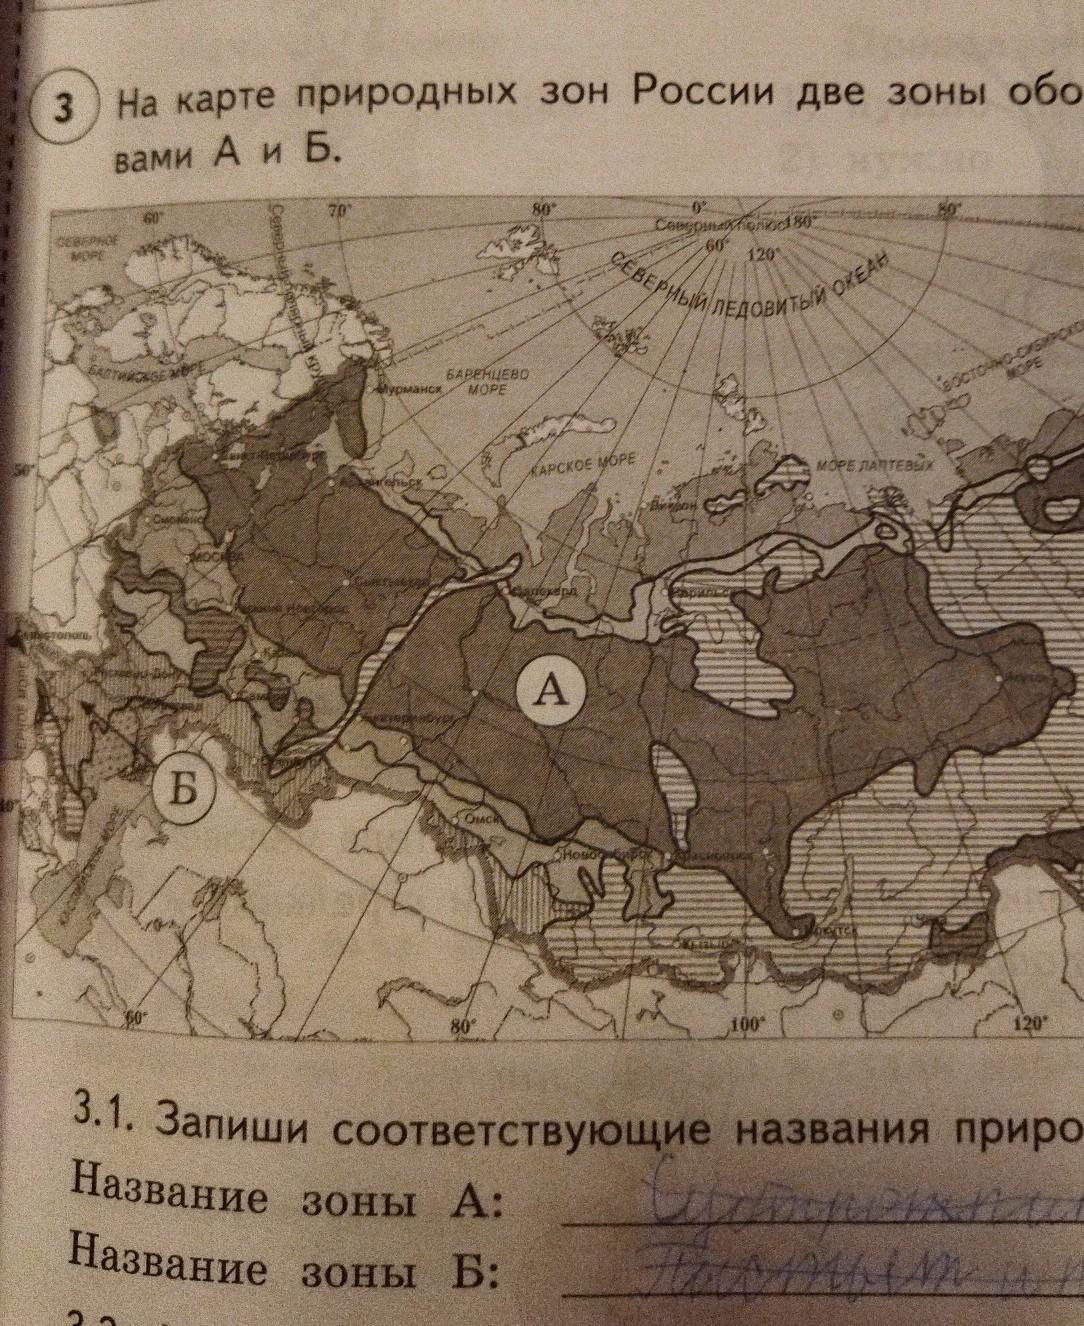 Карта впр зоны окружающий мир ответы россии. Карта природных зон России. Карта России две природные зоны. На карте природных зон России две зоны. На карте природных зон России 2 зоны обозначены буквами а и б.